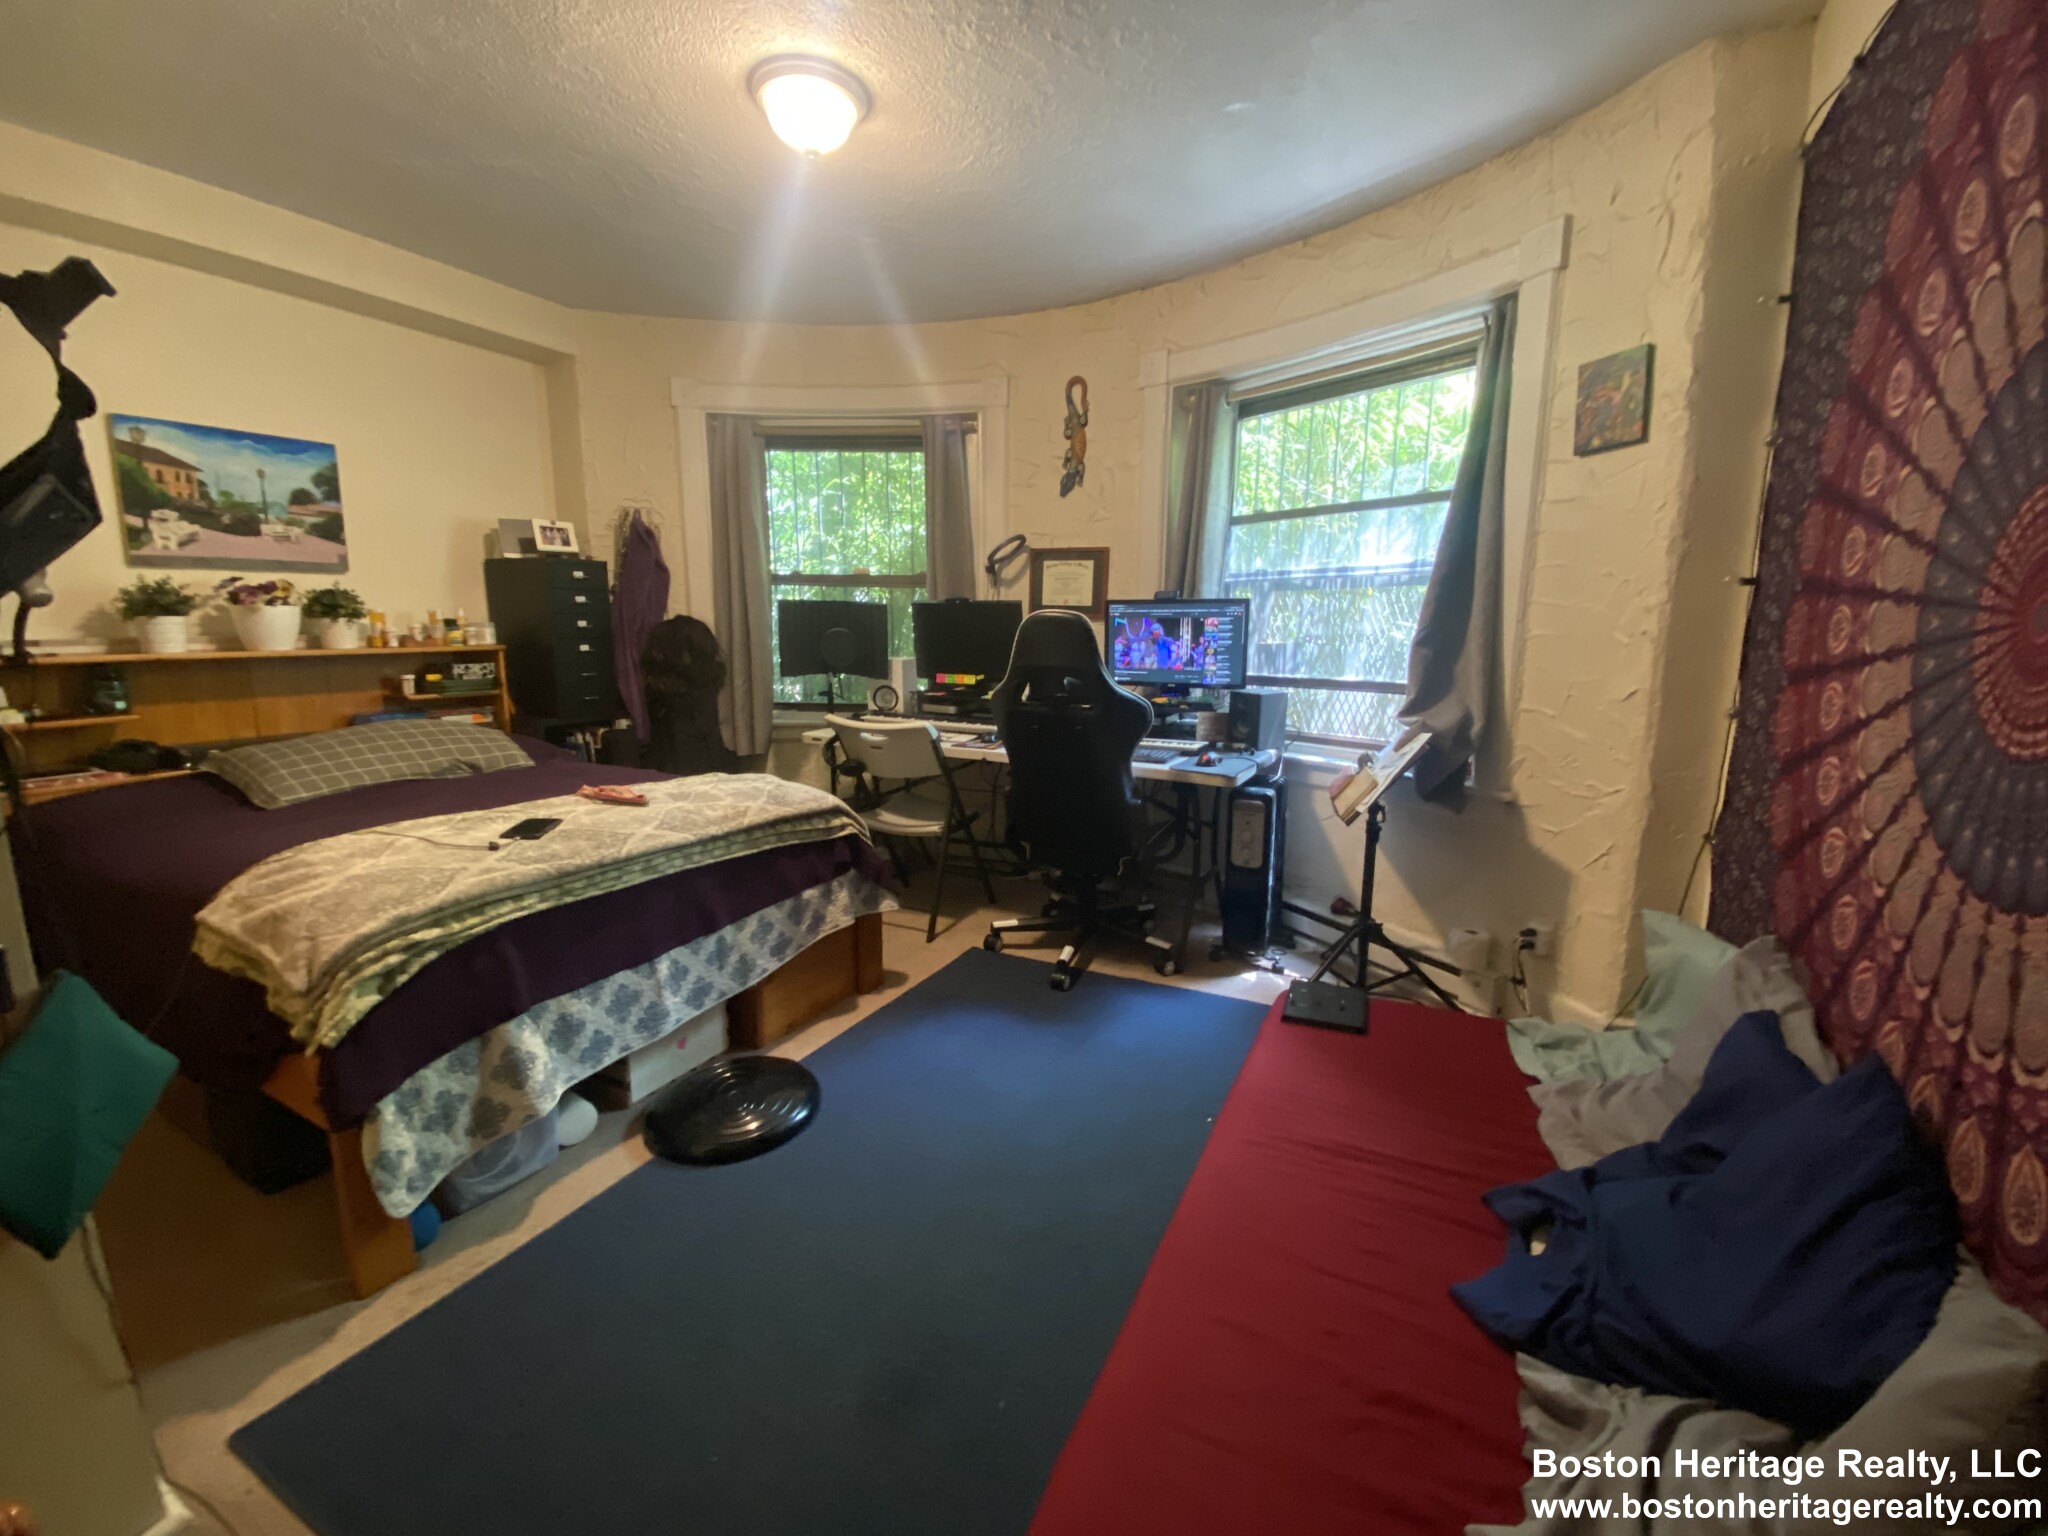 Studio, 1 Bath apartment in Boston, Fenway for $1,600